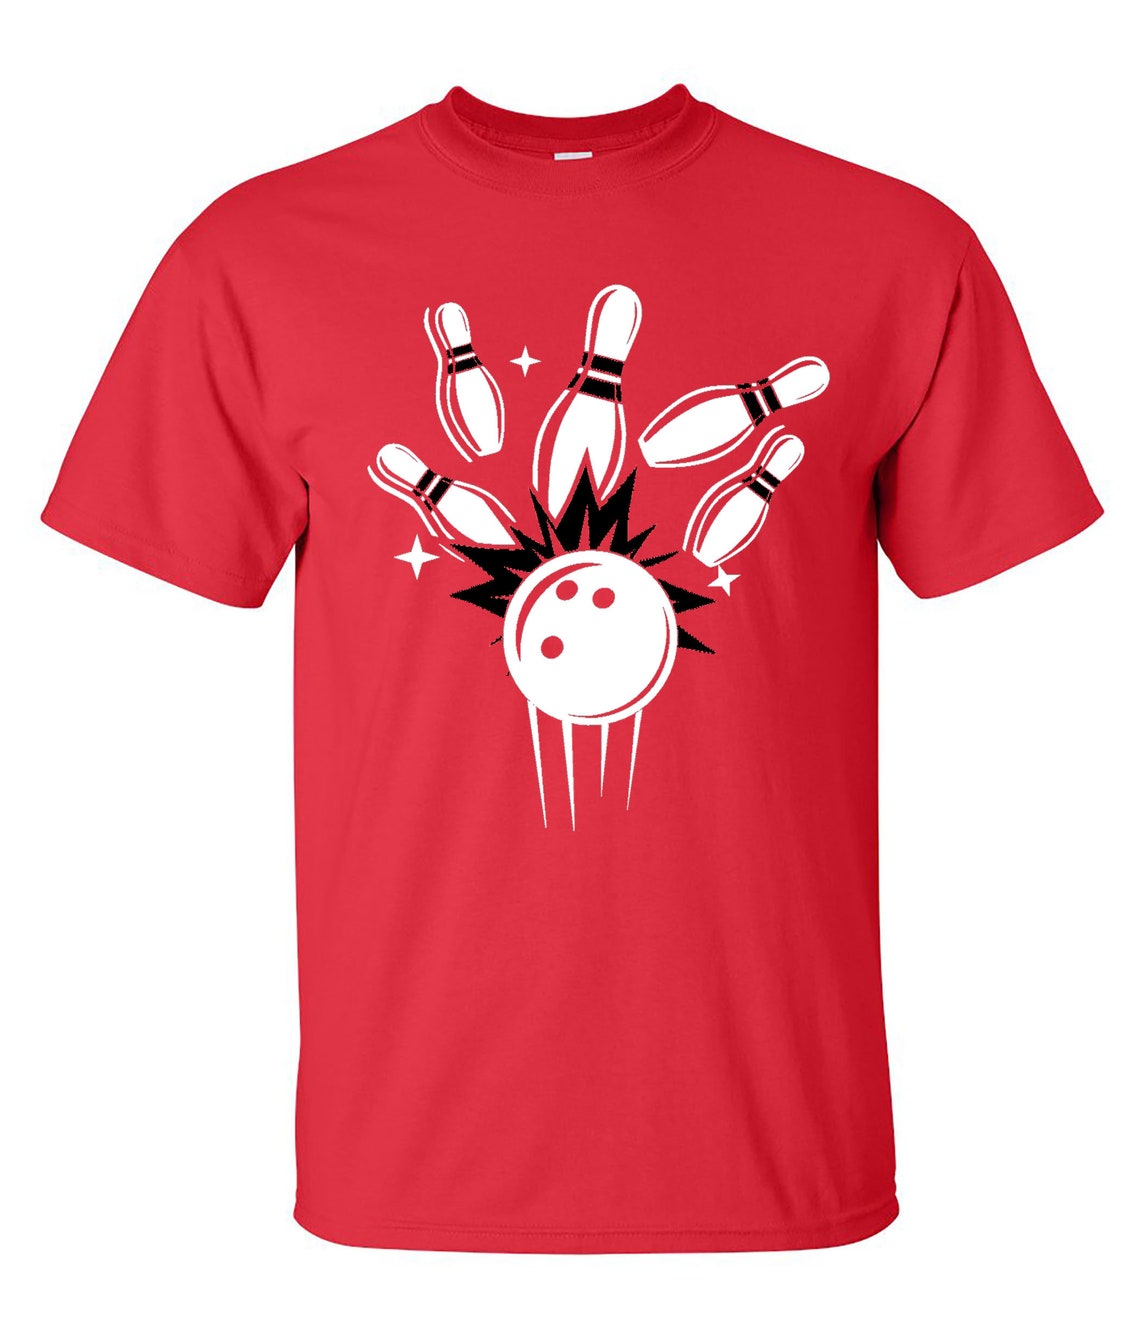 Bowling T-shirt Bowling Shirt Bowling Sweatshirt | Etsy